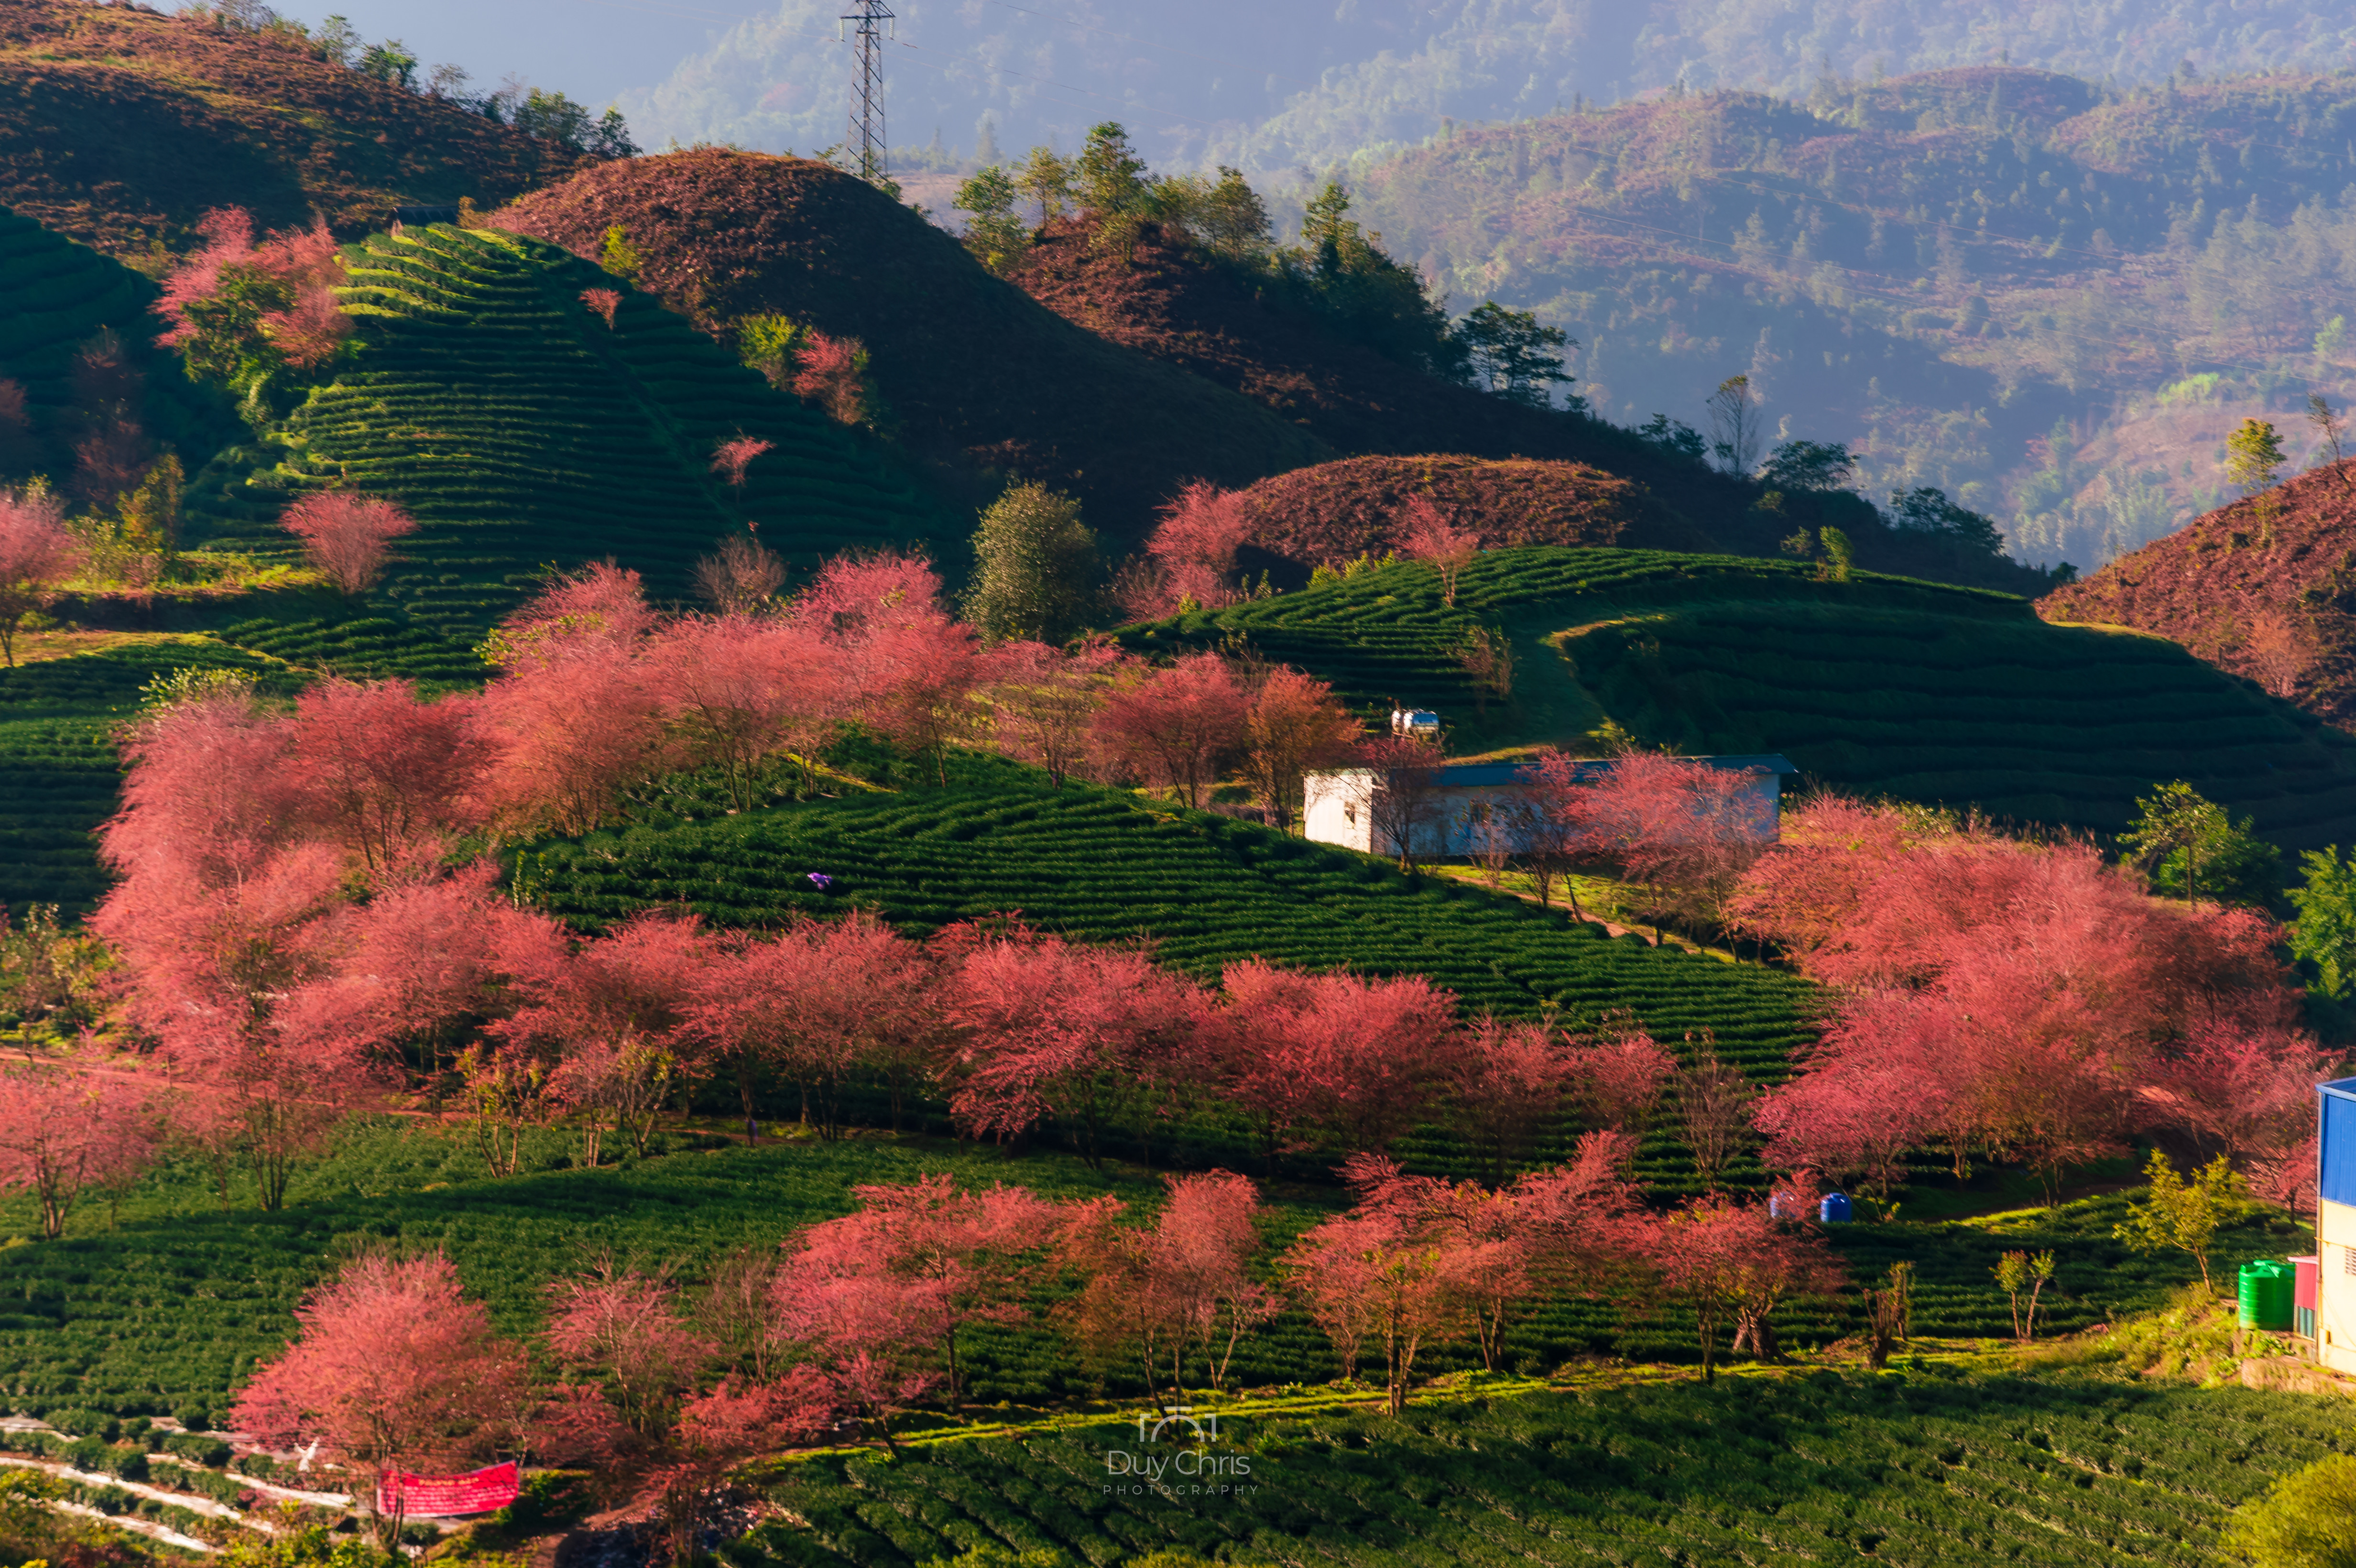 Sapa là điểm đến lý tưởng để bạn khám phá mùa thu của miền Bắc Việt Nam. Hãy đắm mình trong sắc vàng của những chiếc lá, trong không khí se lạnh và trong cảm giác yên bình của vùng núi cao này. Du lịch tại đây sẽ cho bạn những kỷ niệm không thể nào quên được về mùa thu tuyệt đẹp.